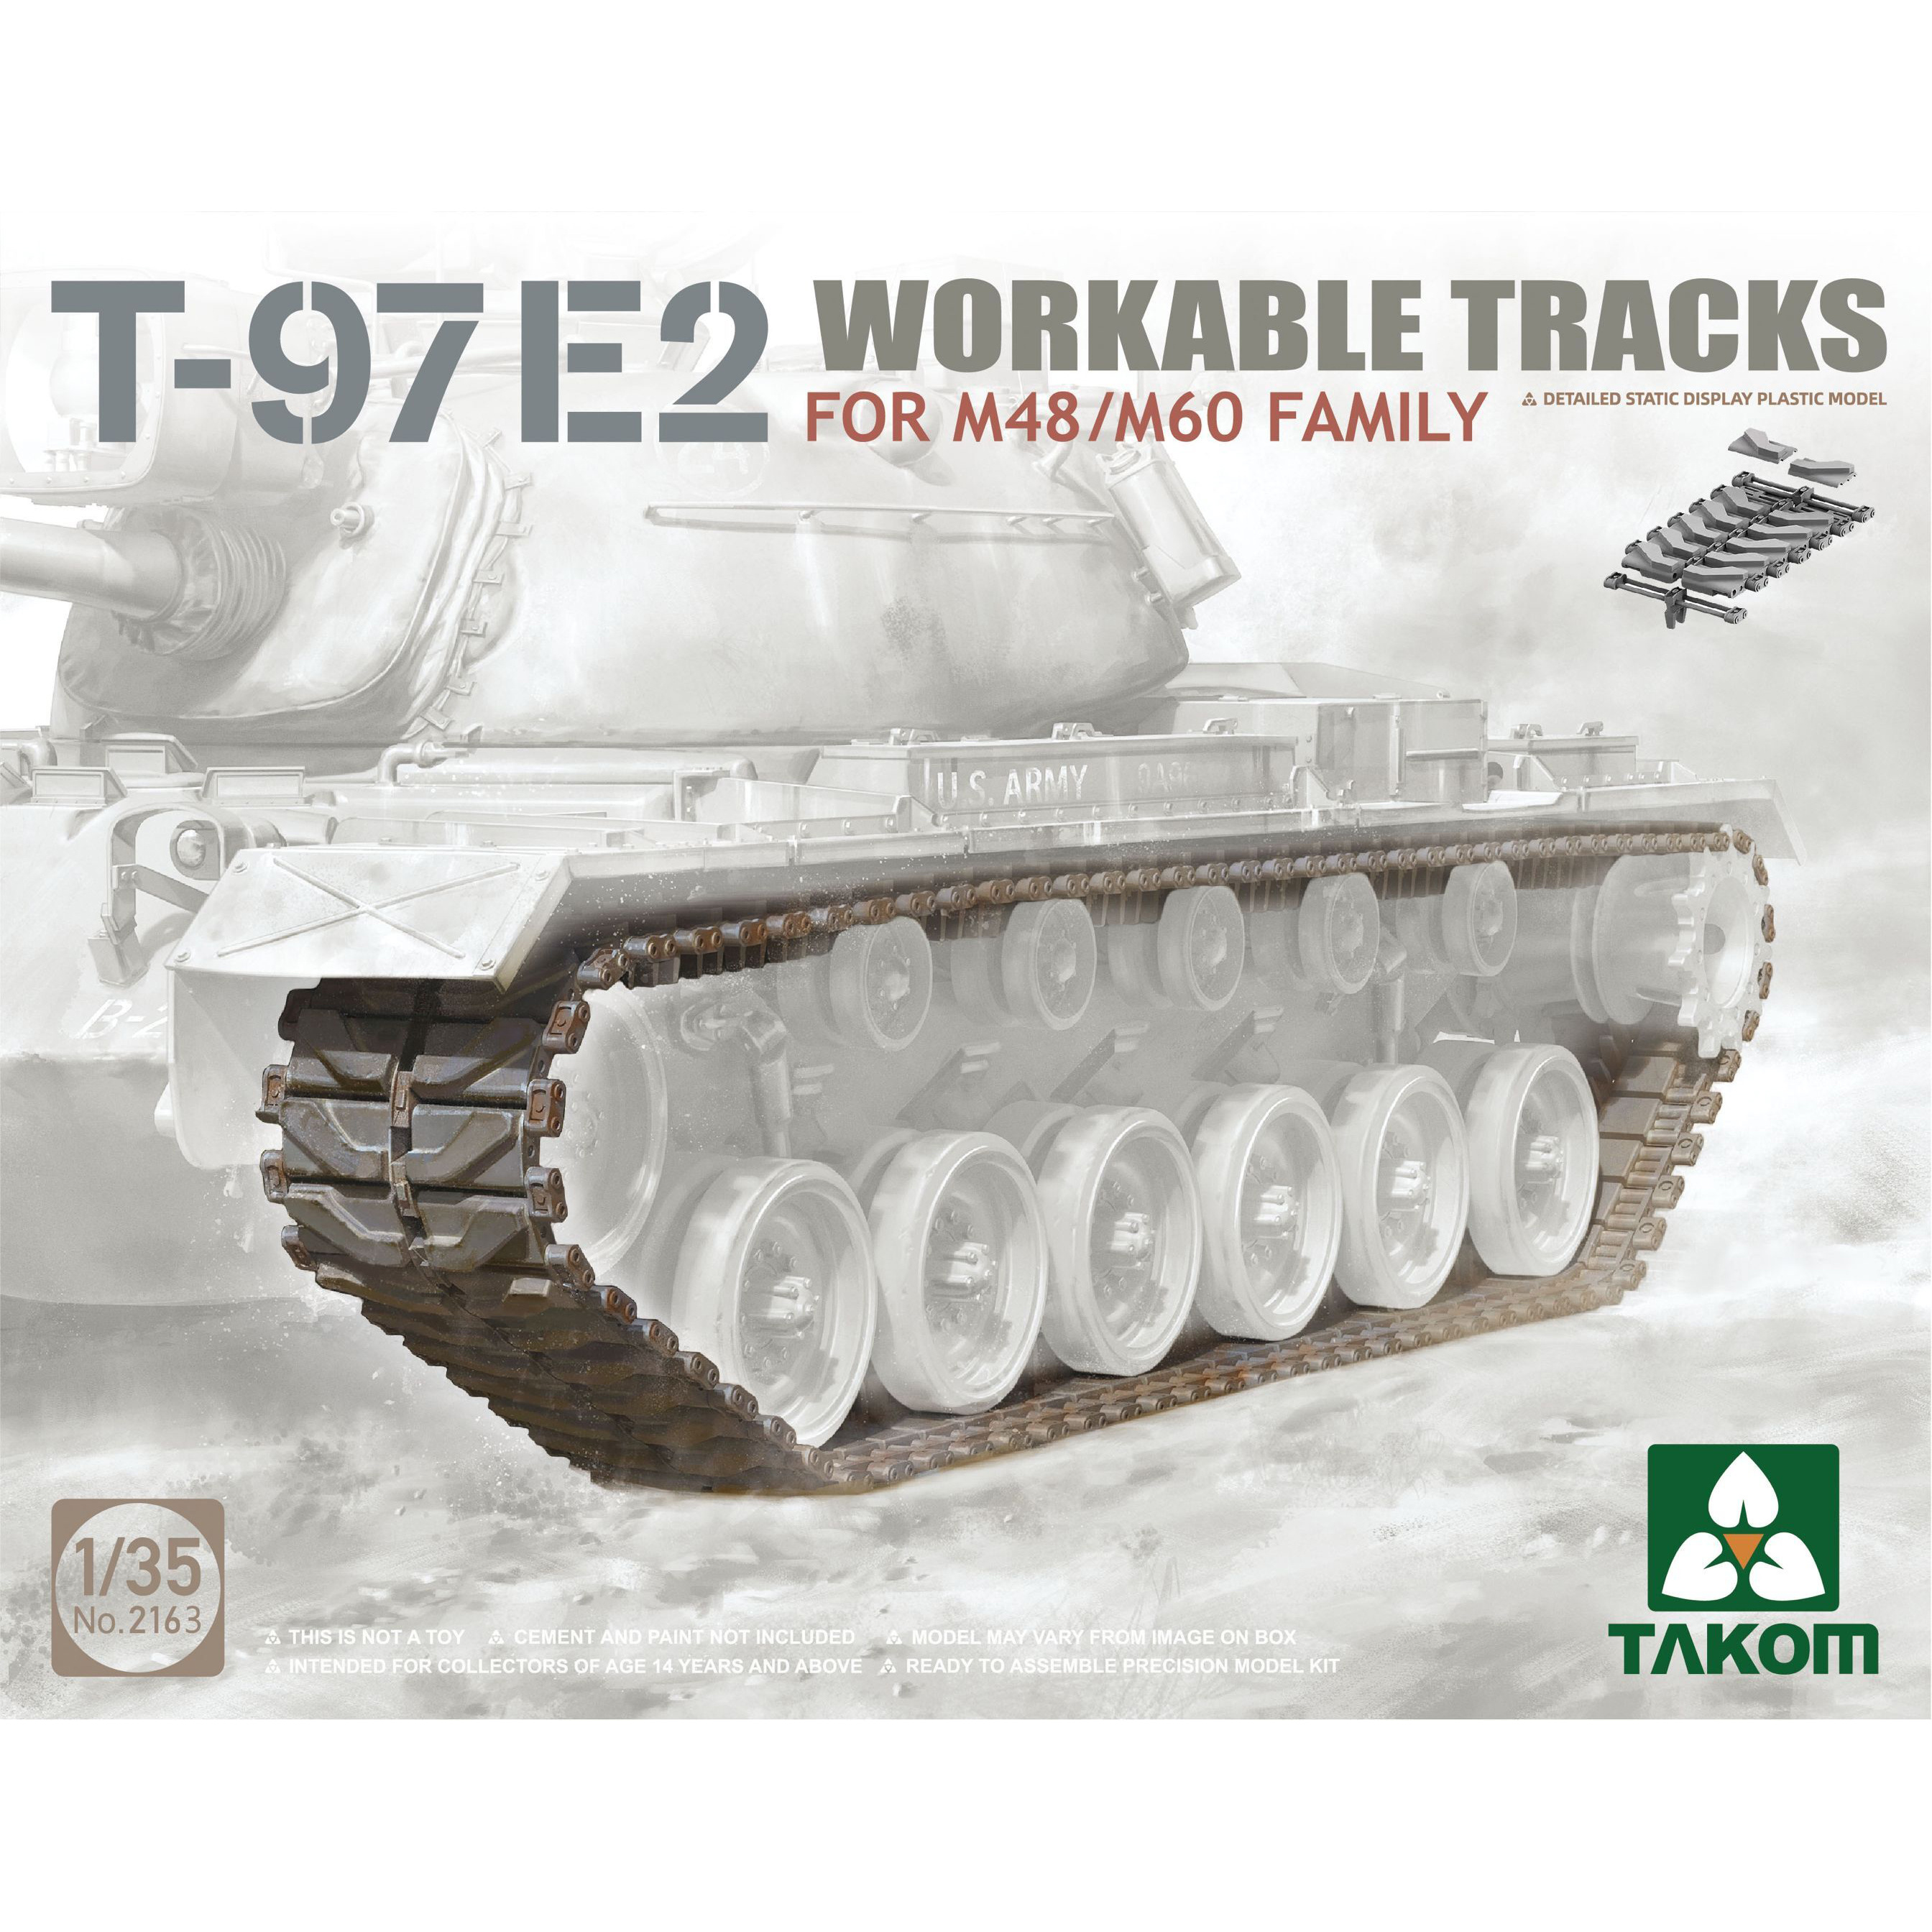 2163 Takom 1/35 Working Typesetting Tracks T-97E2 for M48/M60